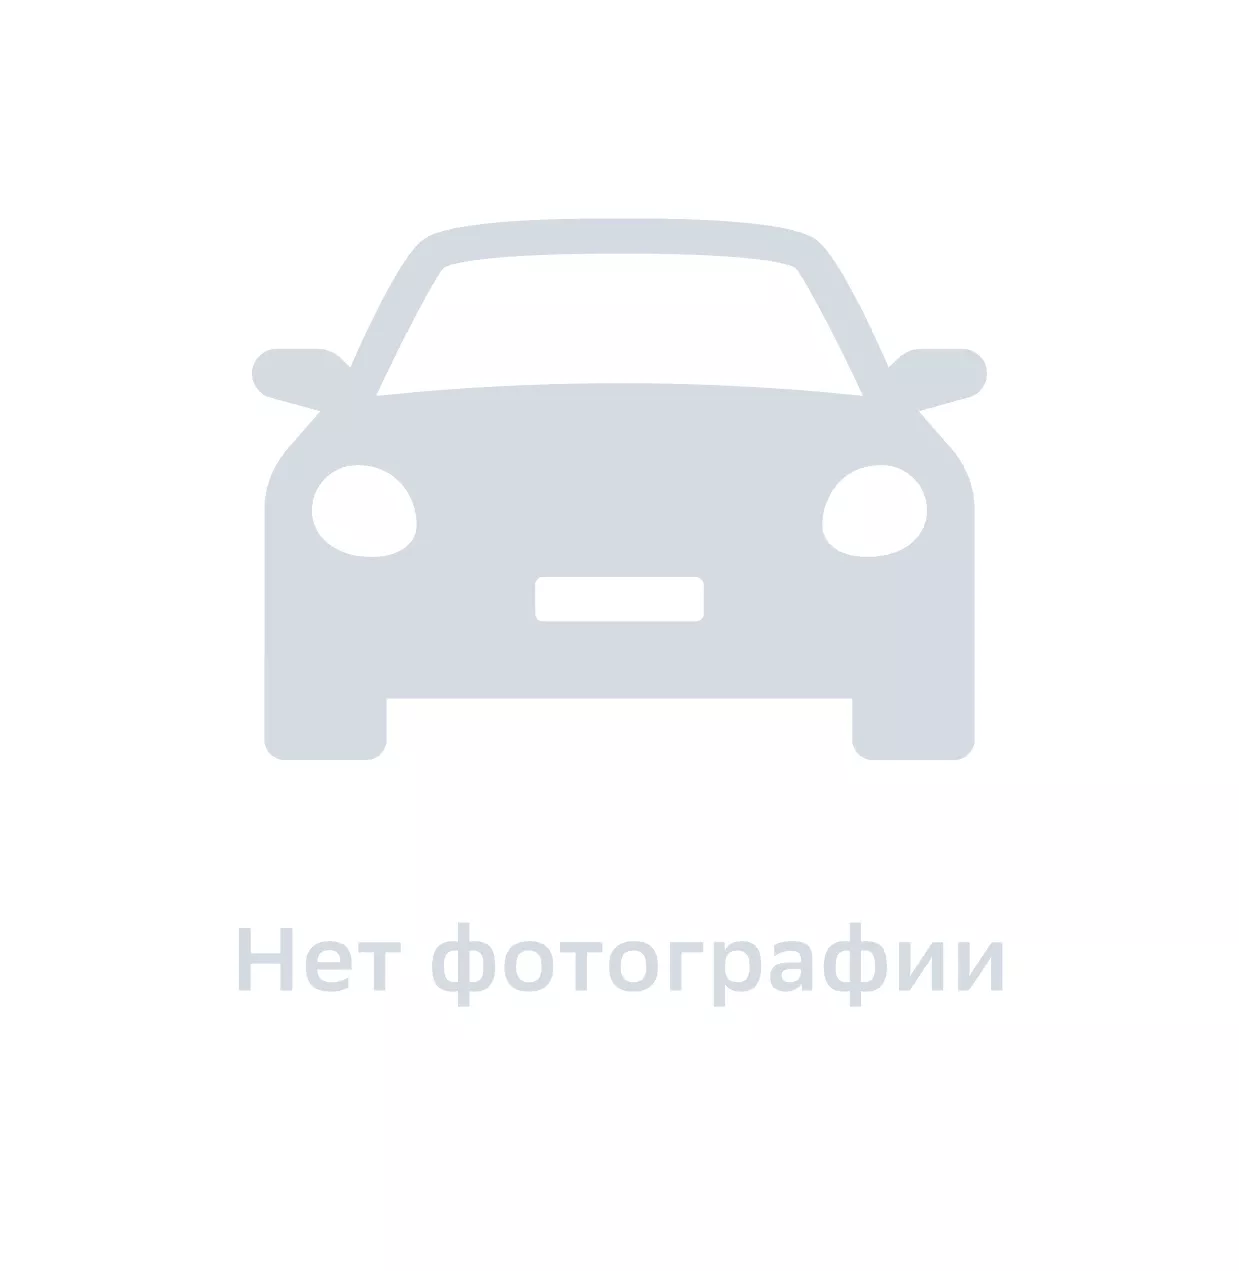 Кожух тормозной передний правый, Hyundai-KIA, арт. 5175633500, цена за 1 шт.